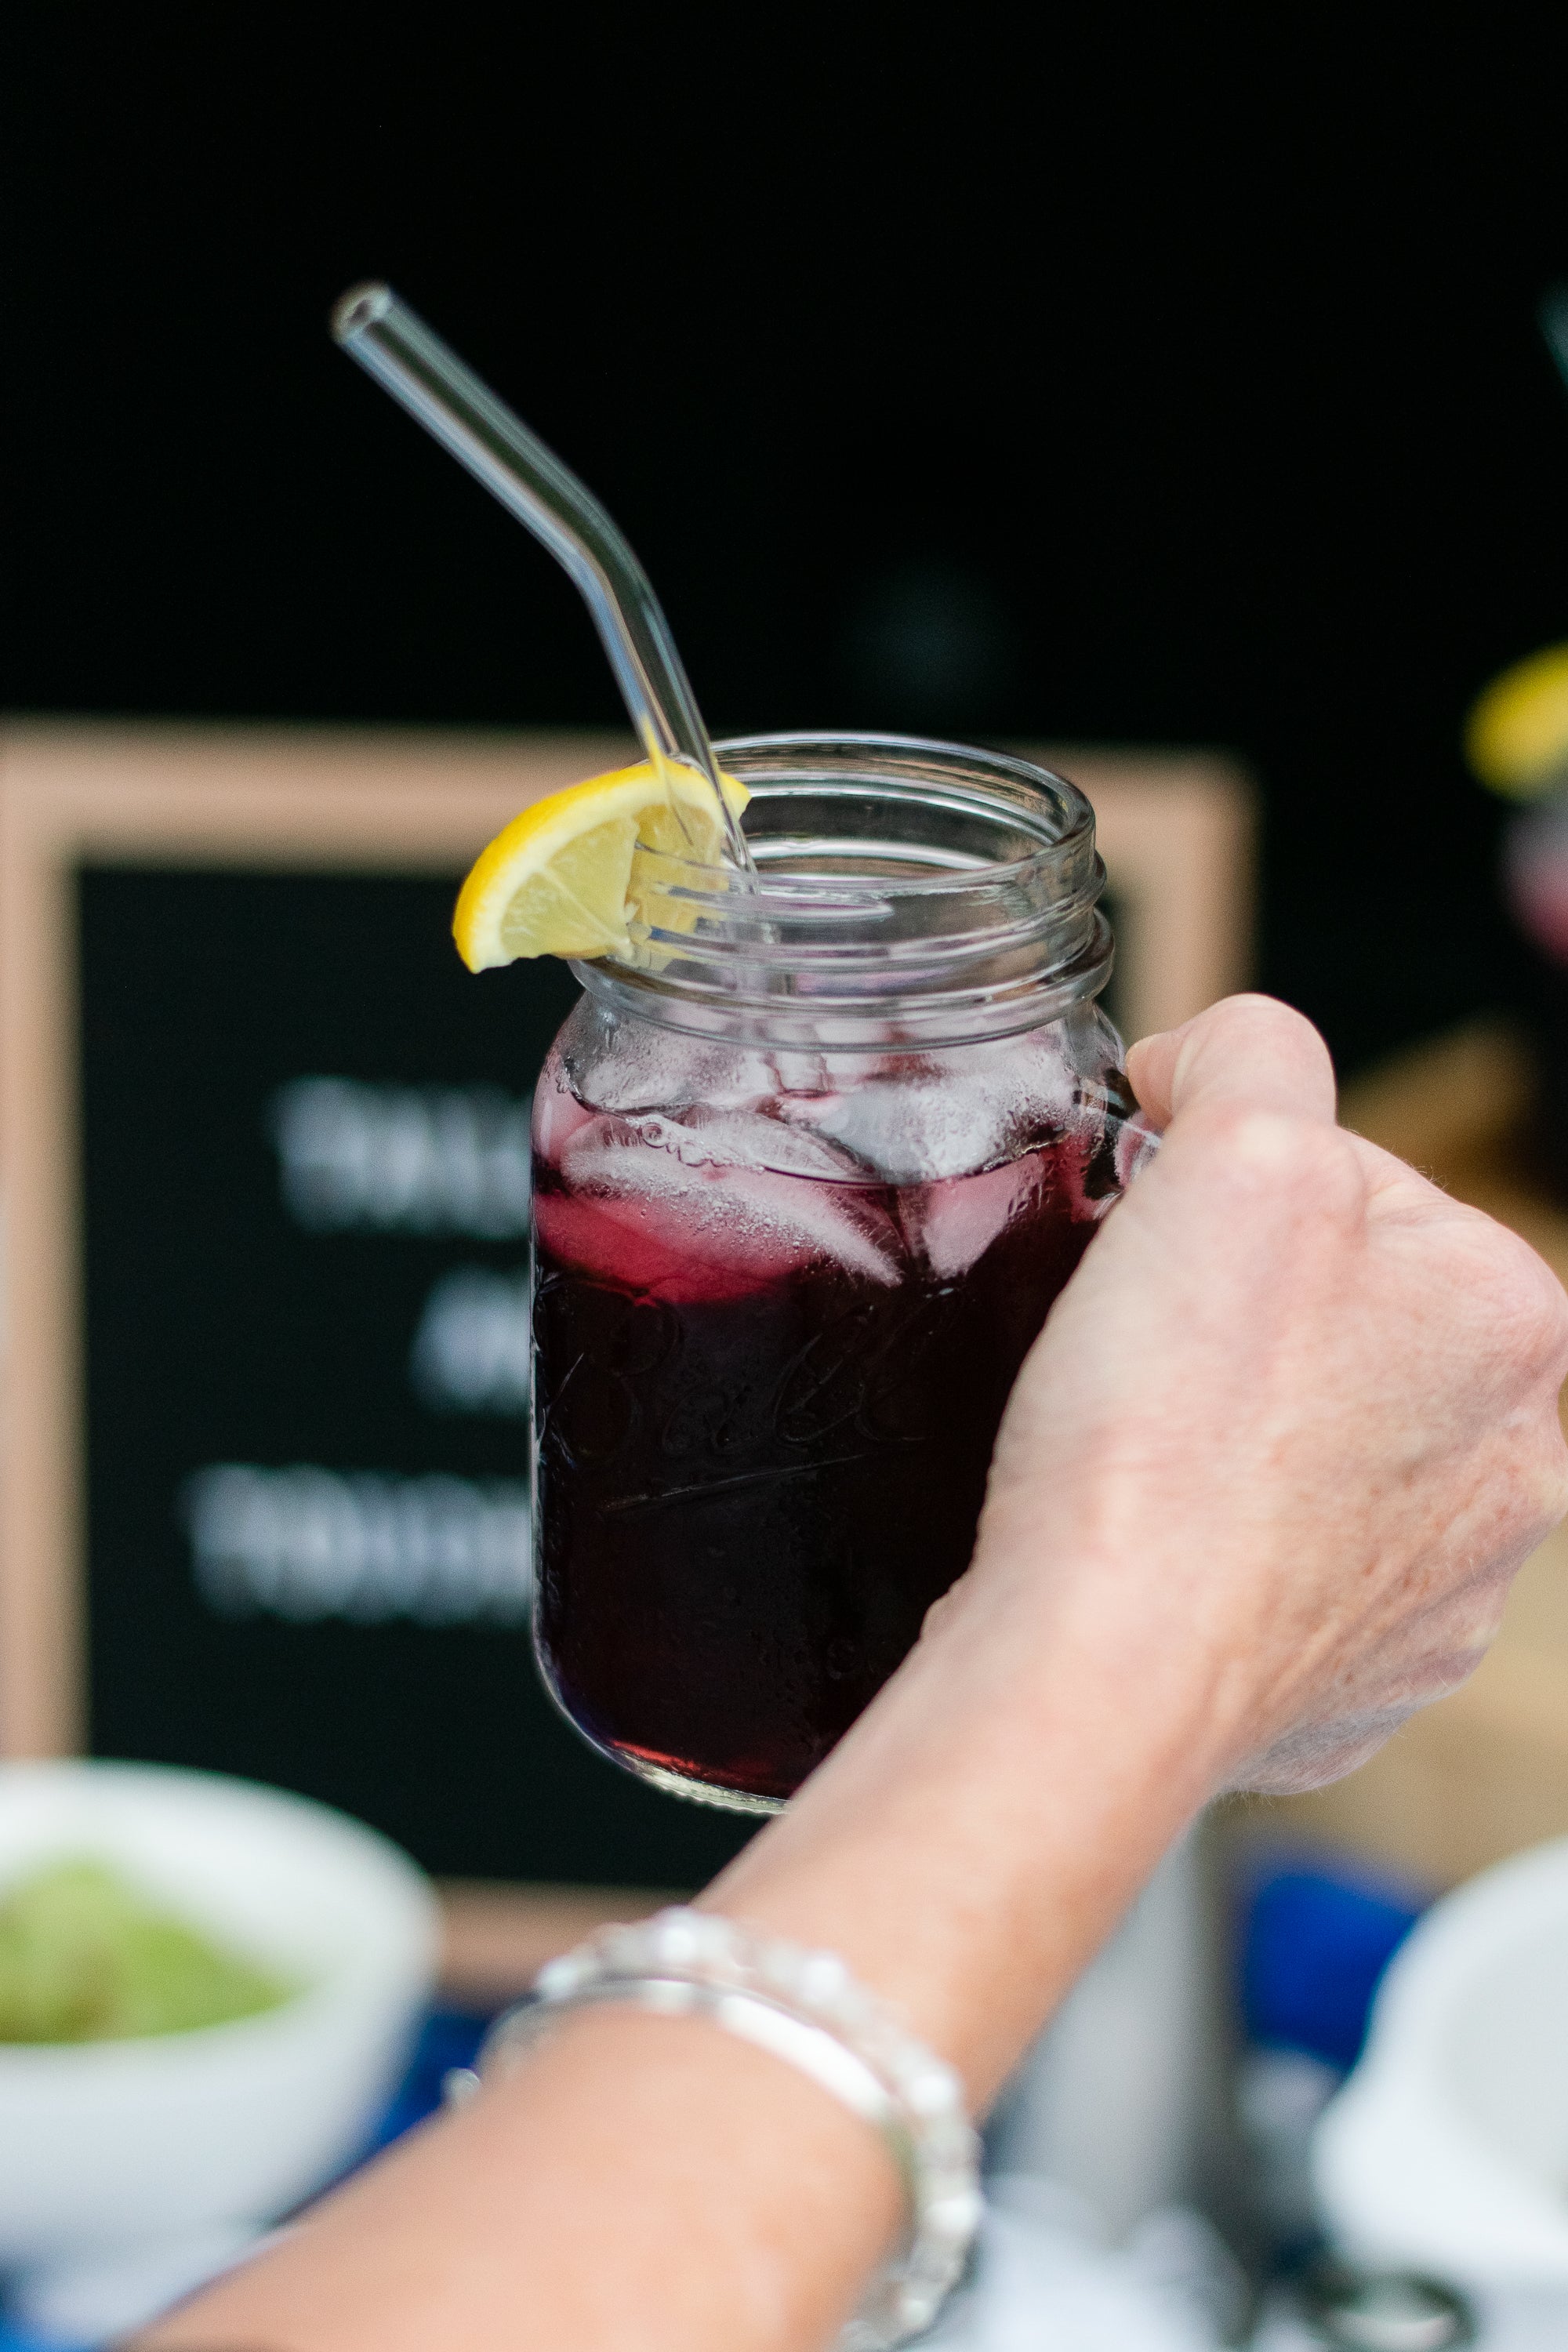 Raspberry lemonade with glass straws